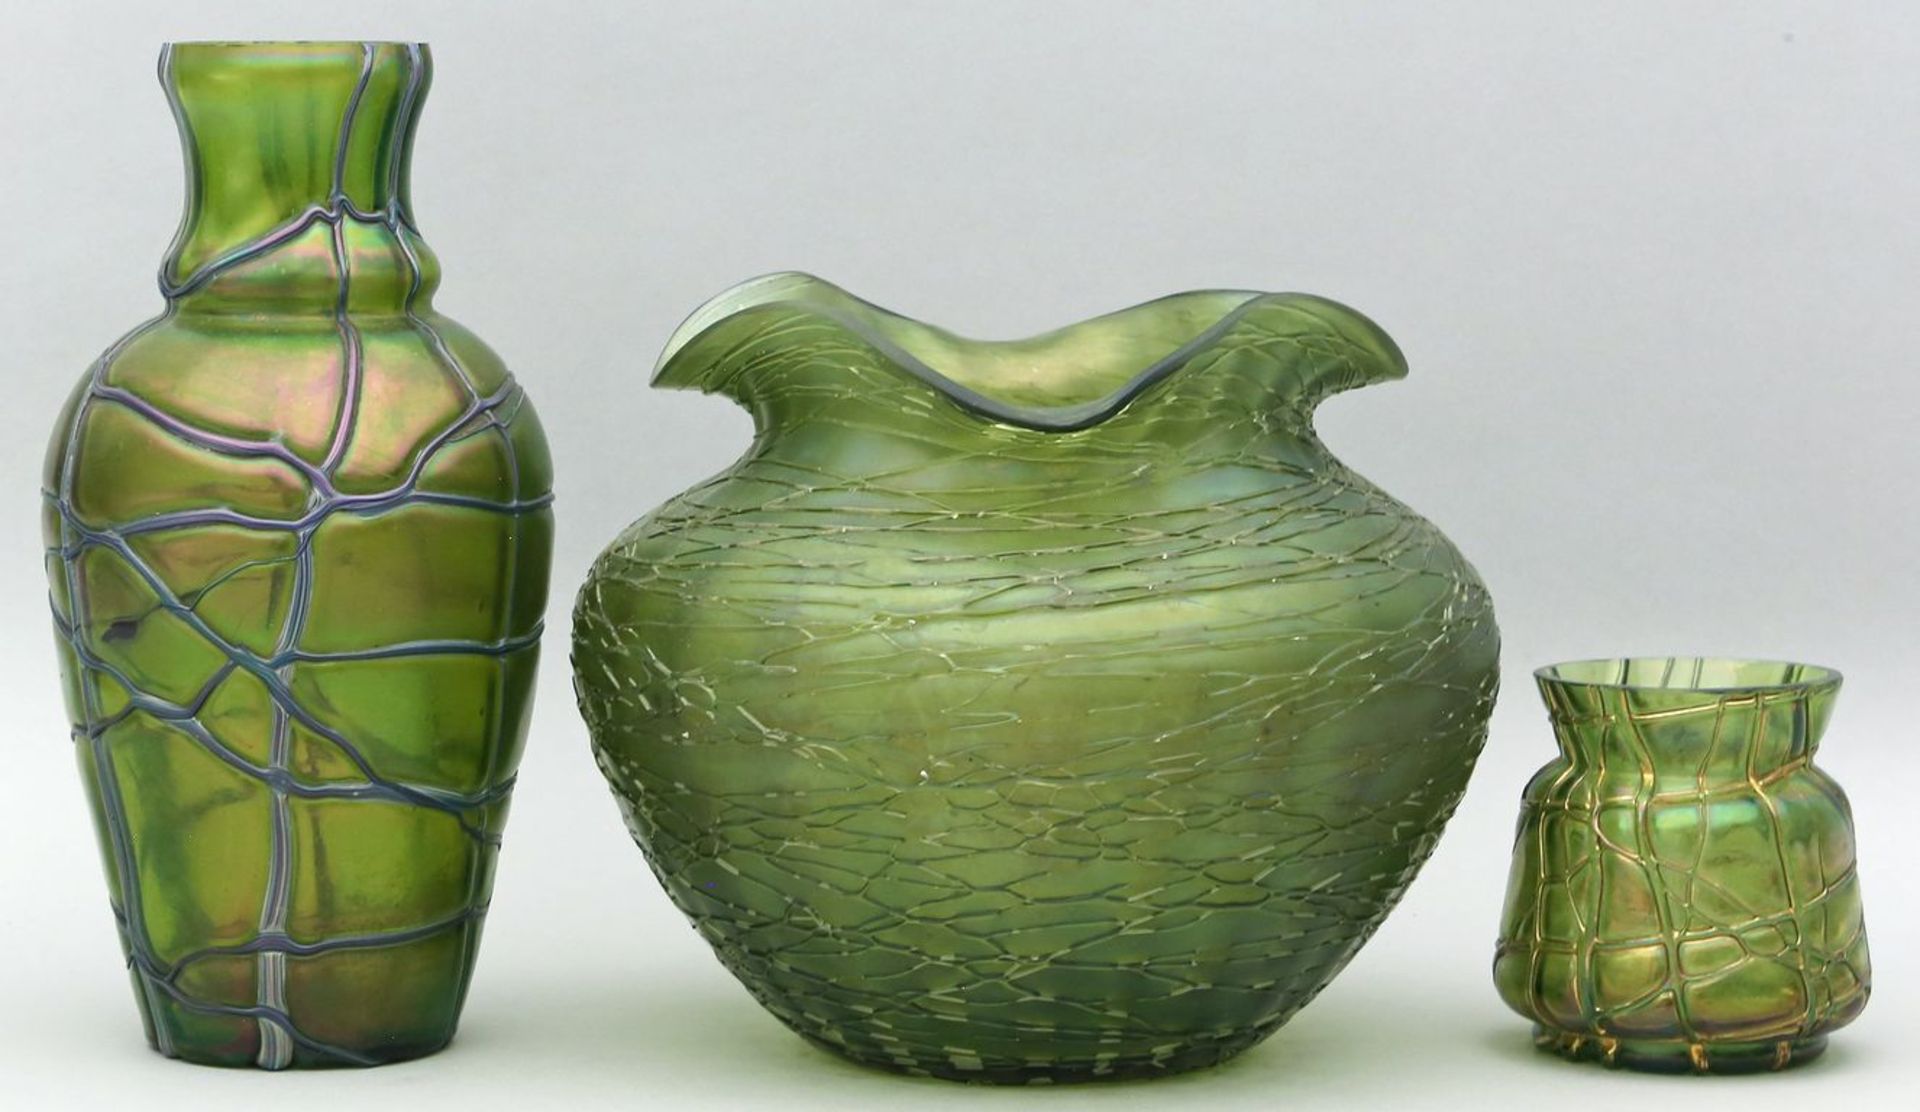 3 Jugendstil-Vasen. Grünes Glas mit irisierender Oberfläche und netzartigen Aufschmelzungen. L.